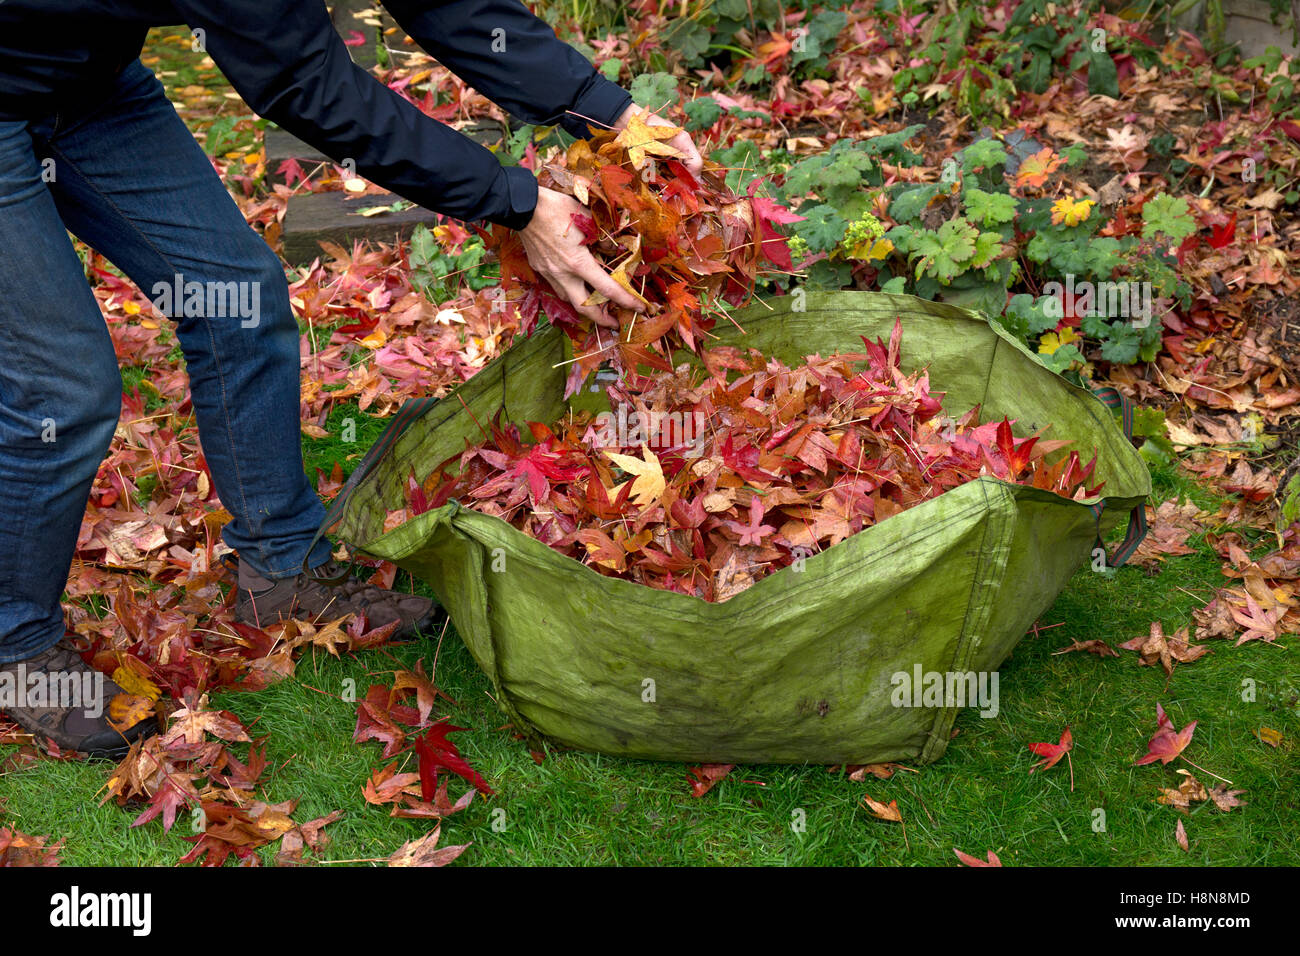 Garten zu verweigern Sack, die gefüllt mit Blättern im Herbst englischen Garten Stockfoto